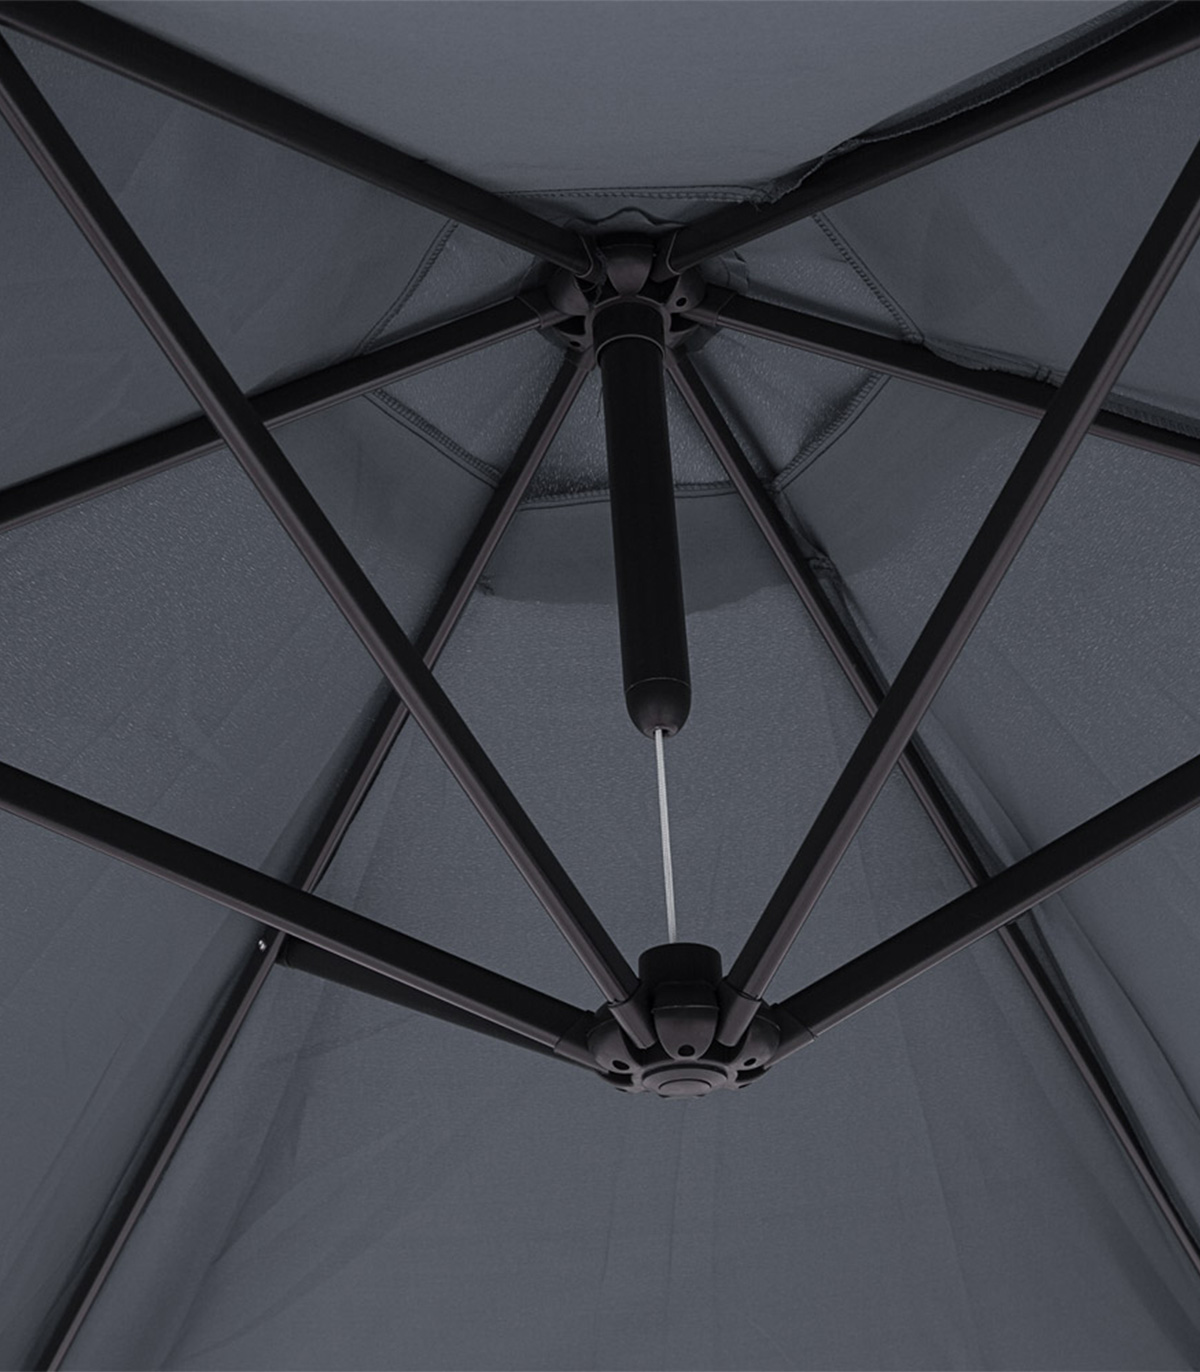 Umbrela soare cu manivela rotunda, Functie dee inclinare, Antracit, 330 cm 330 pret redus imagine 2022 5